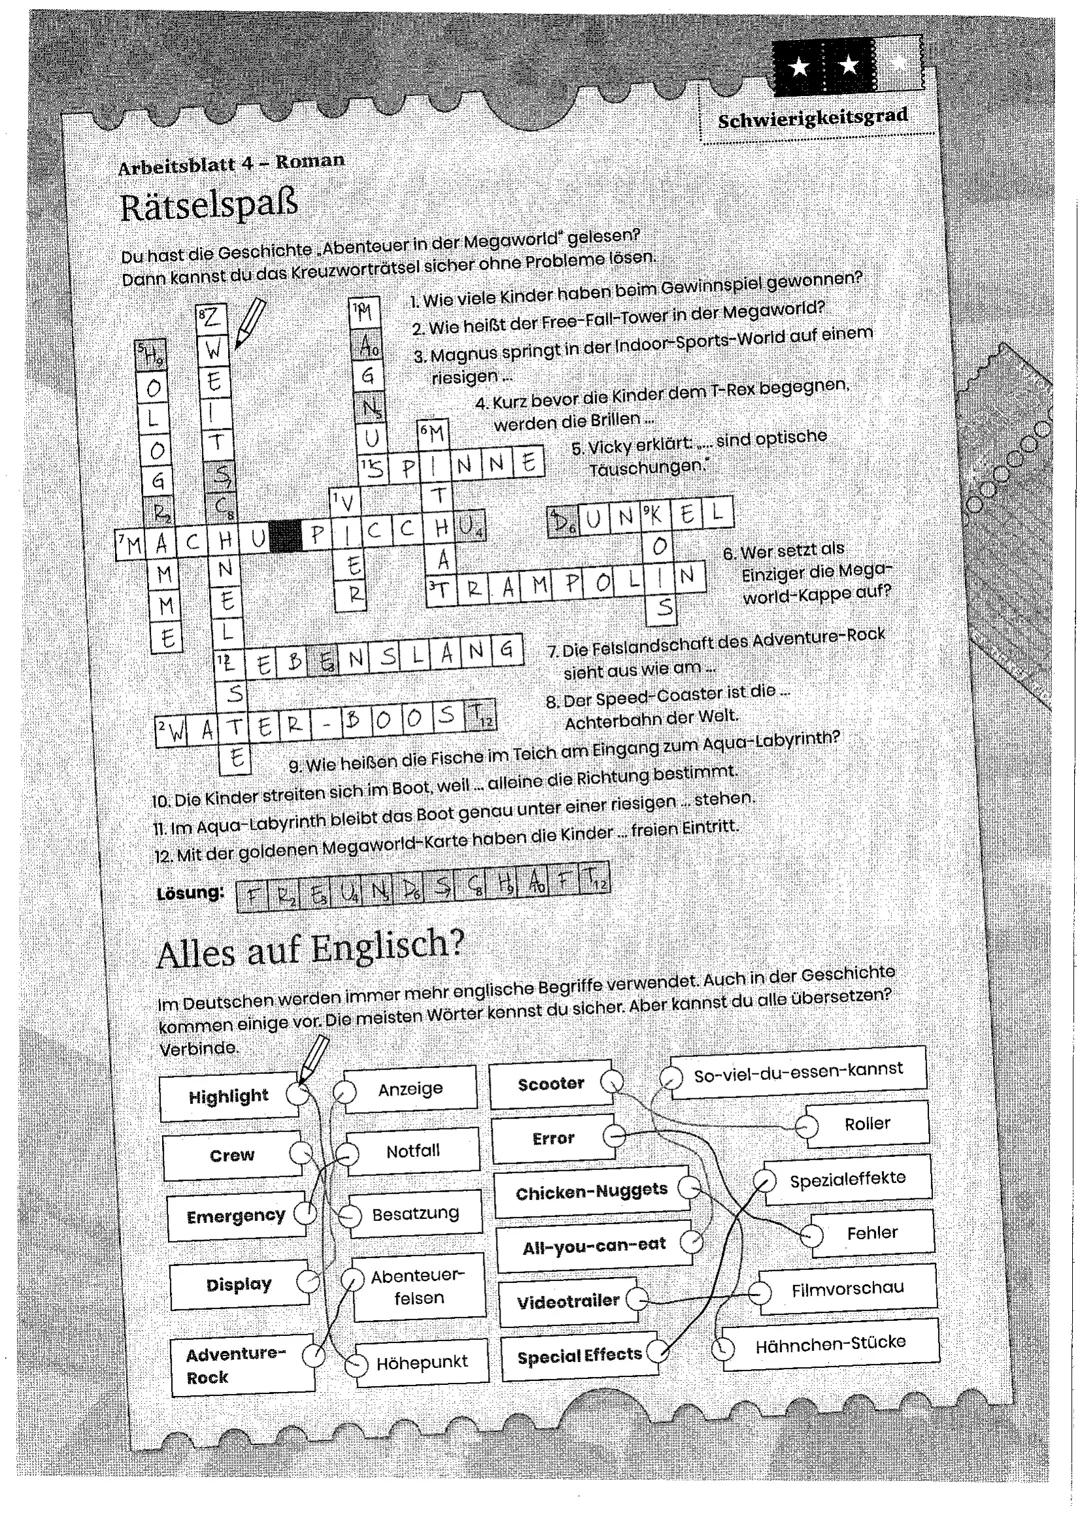 Arbeitsblatt 4 - Roman
Rätselspaß
Du hast die Geschichte Abenteuer in der Megaworld" gelesen?
Dann kannst du das Kreuzworträtsel sicher ohne